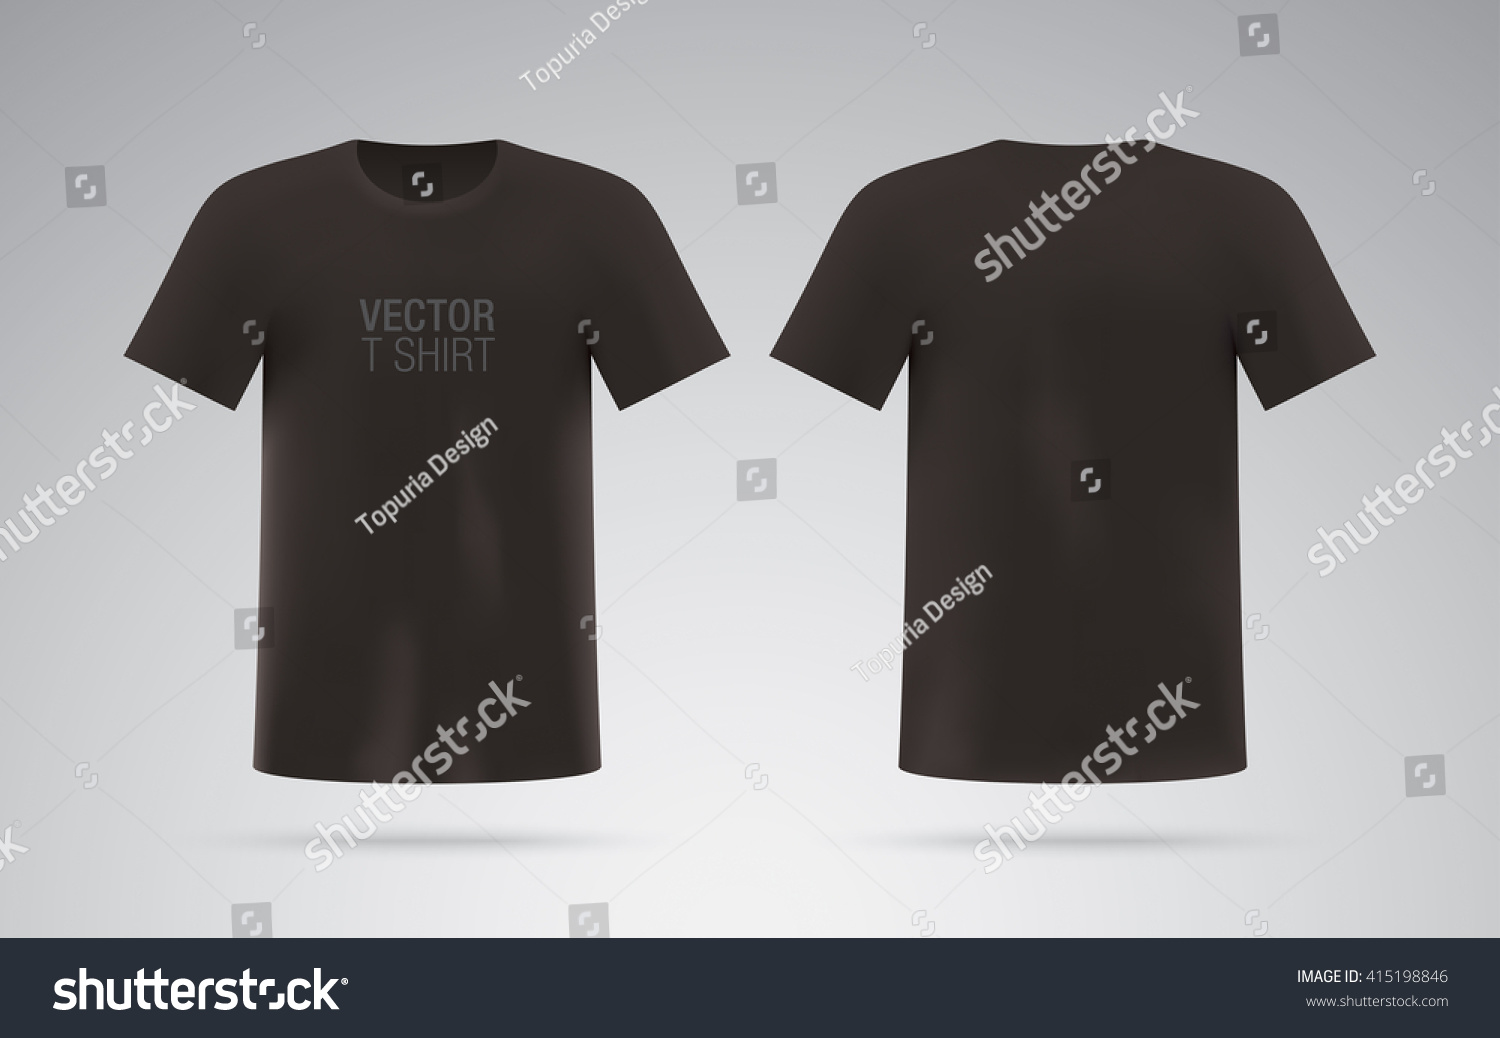 Download Men'S Black T-Shirt. Short Sleeve Vector T-Shirt Template ...